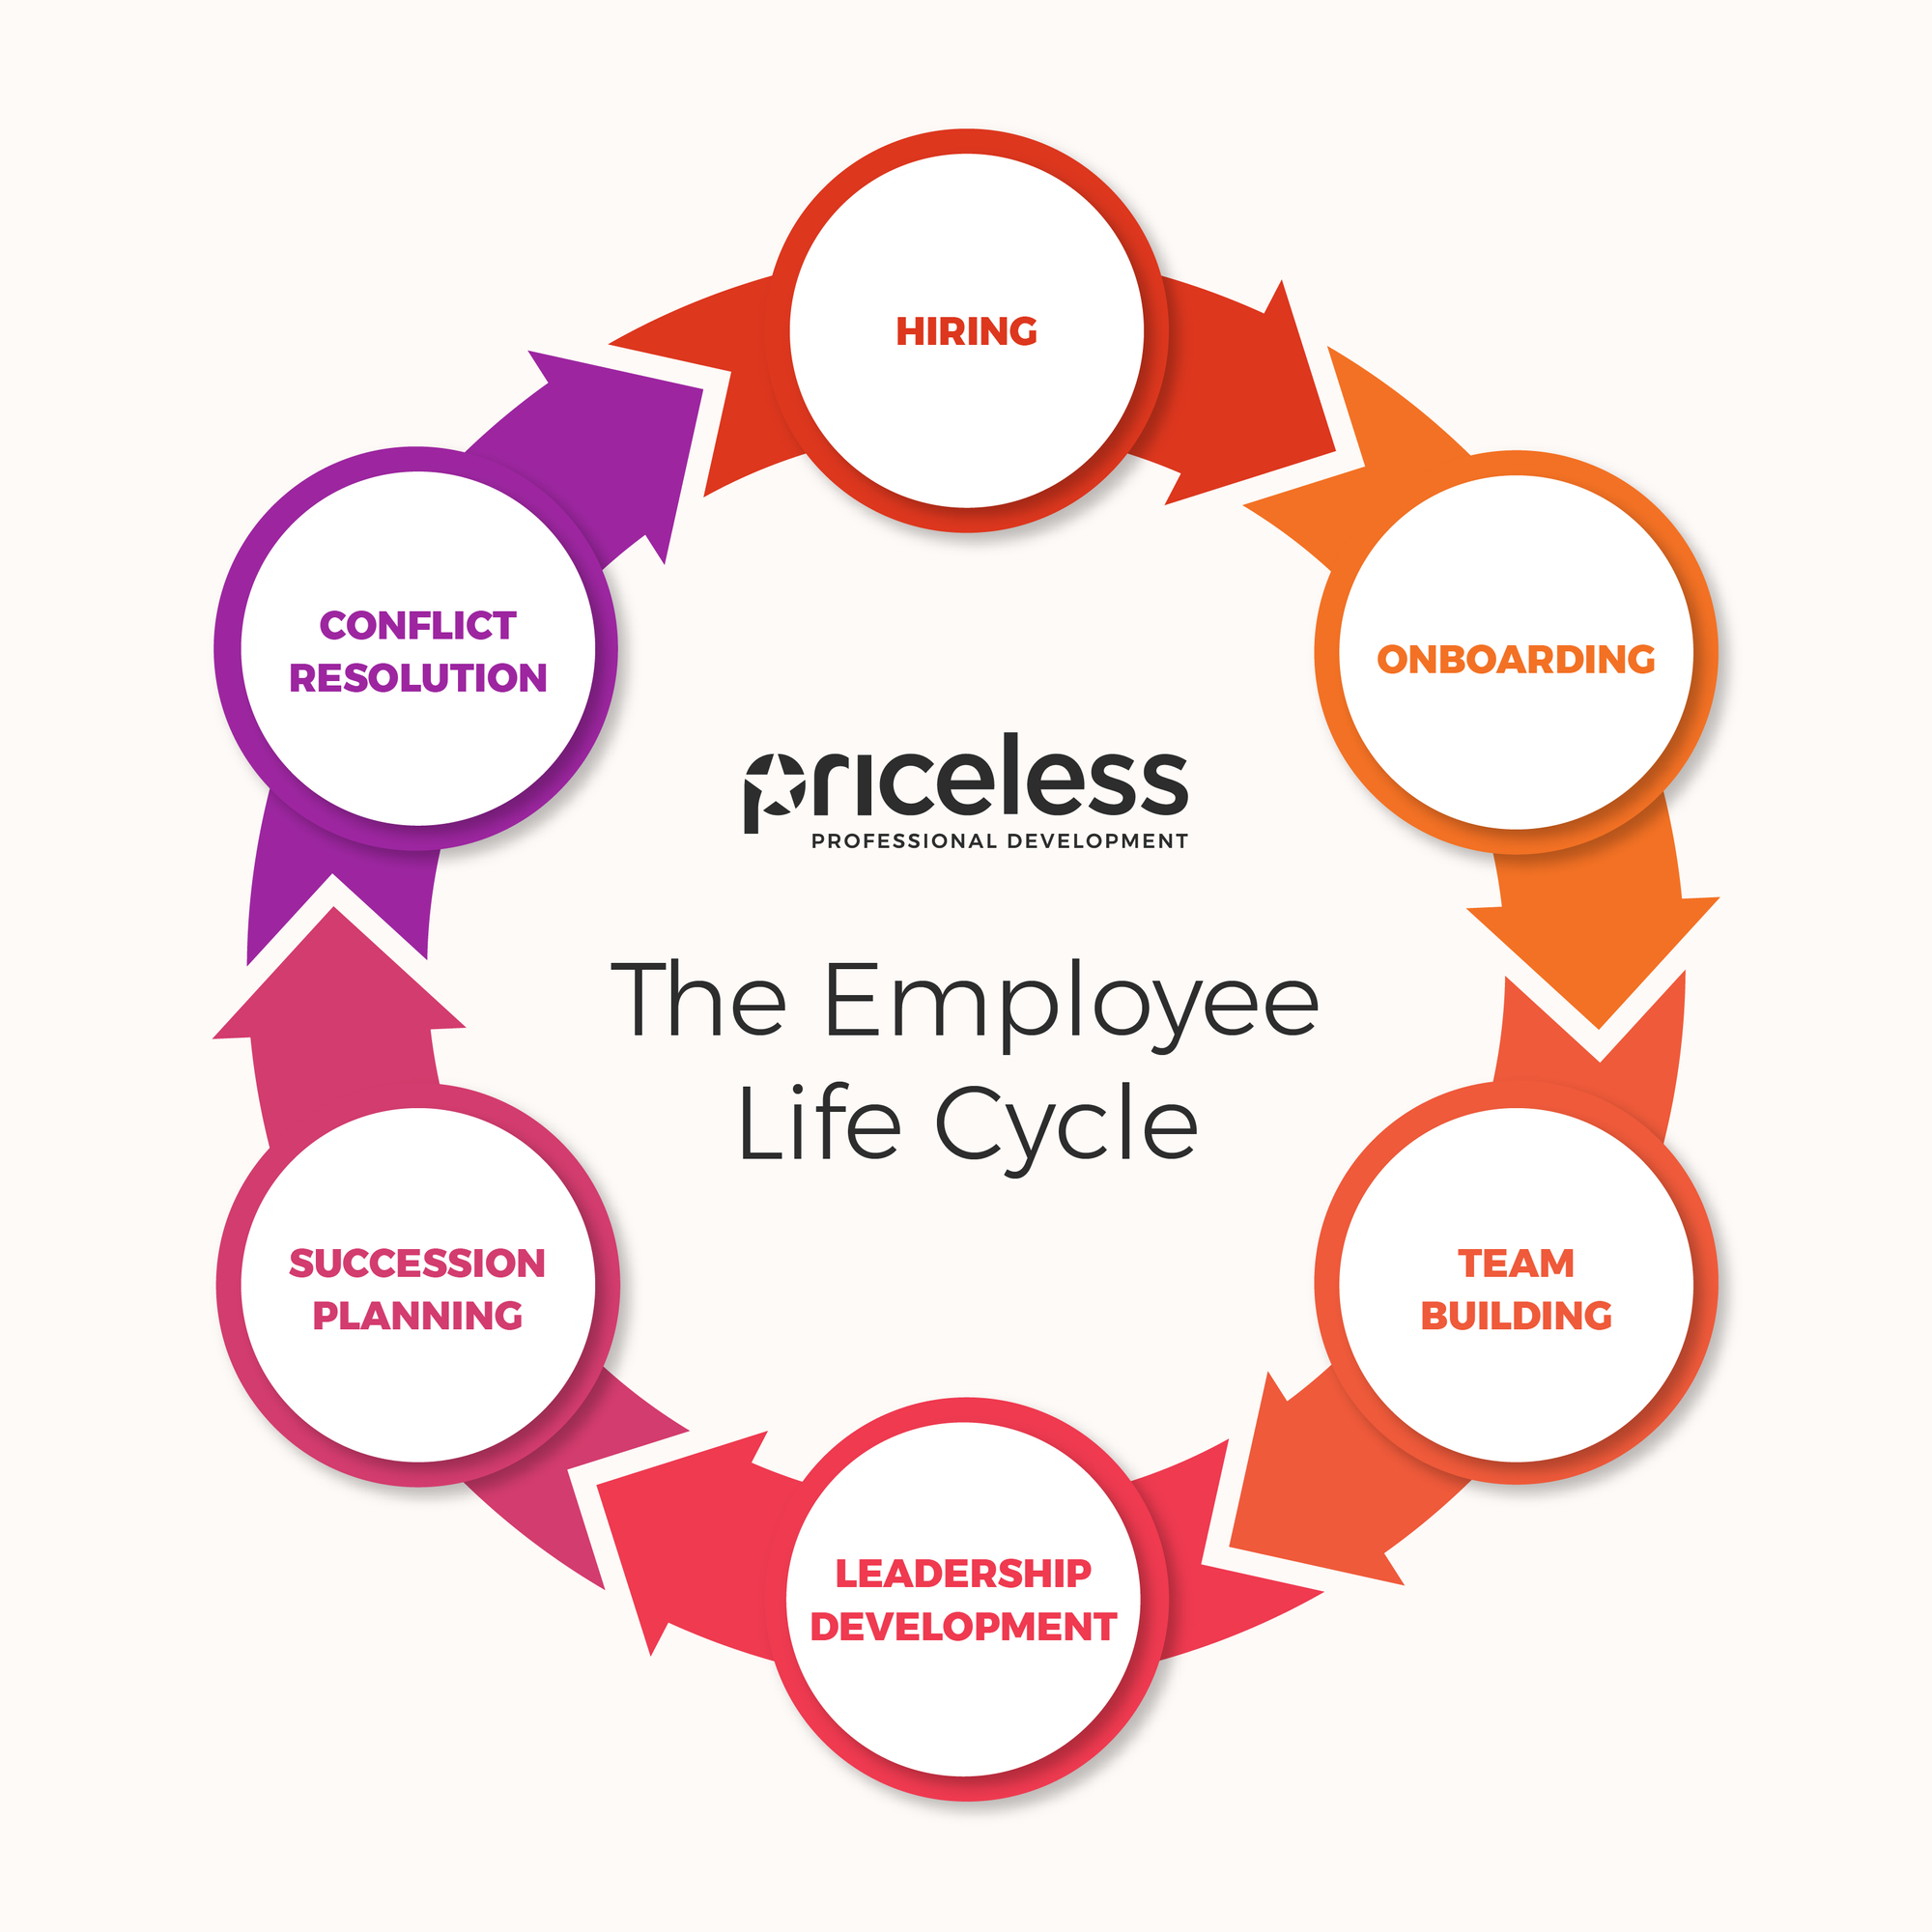 employee life cycle image